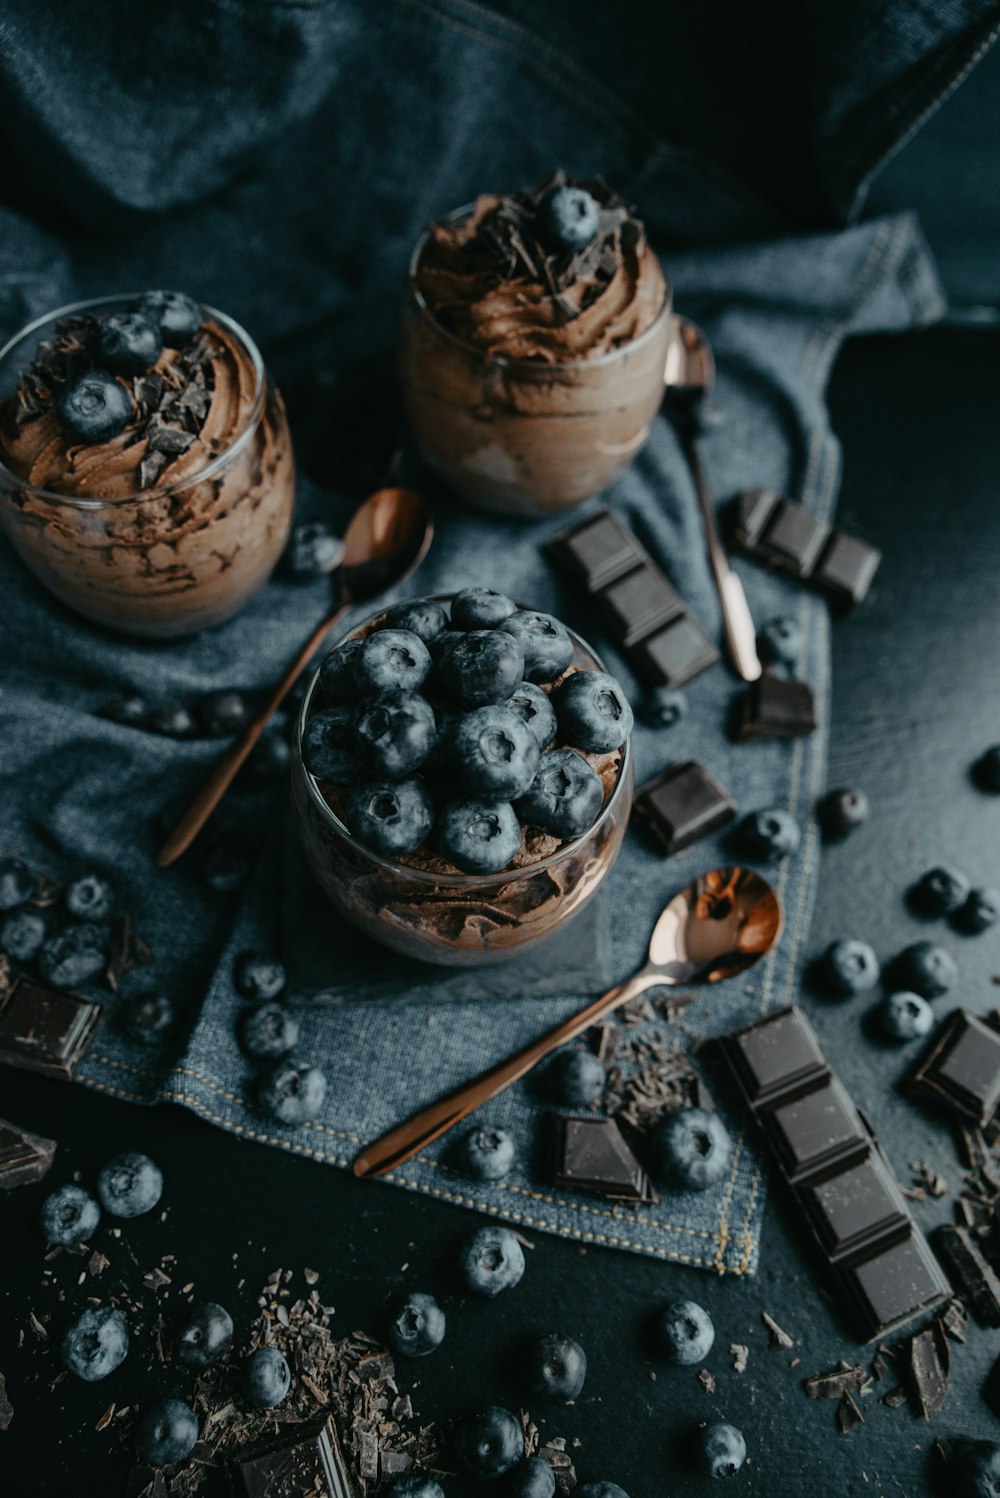 zwei Desserts mit Schokolade und Blaubeeren auf einem Tuch